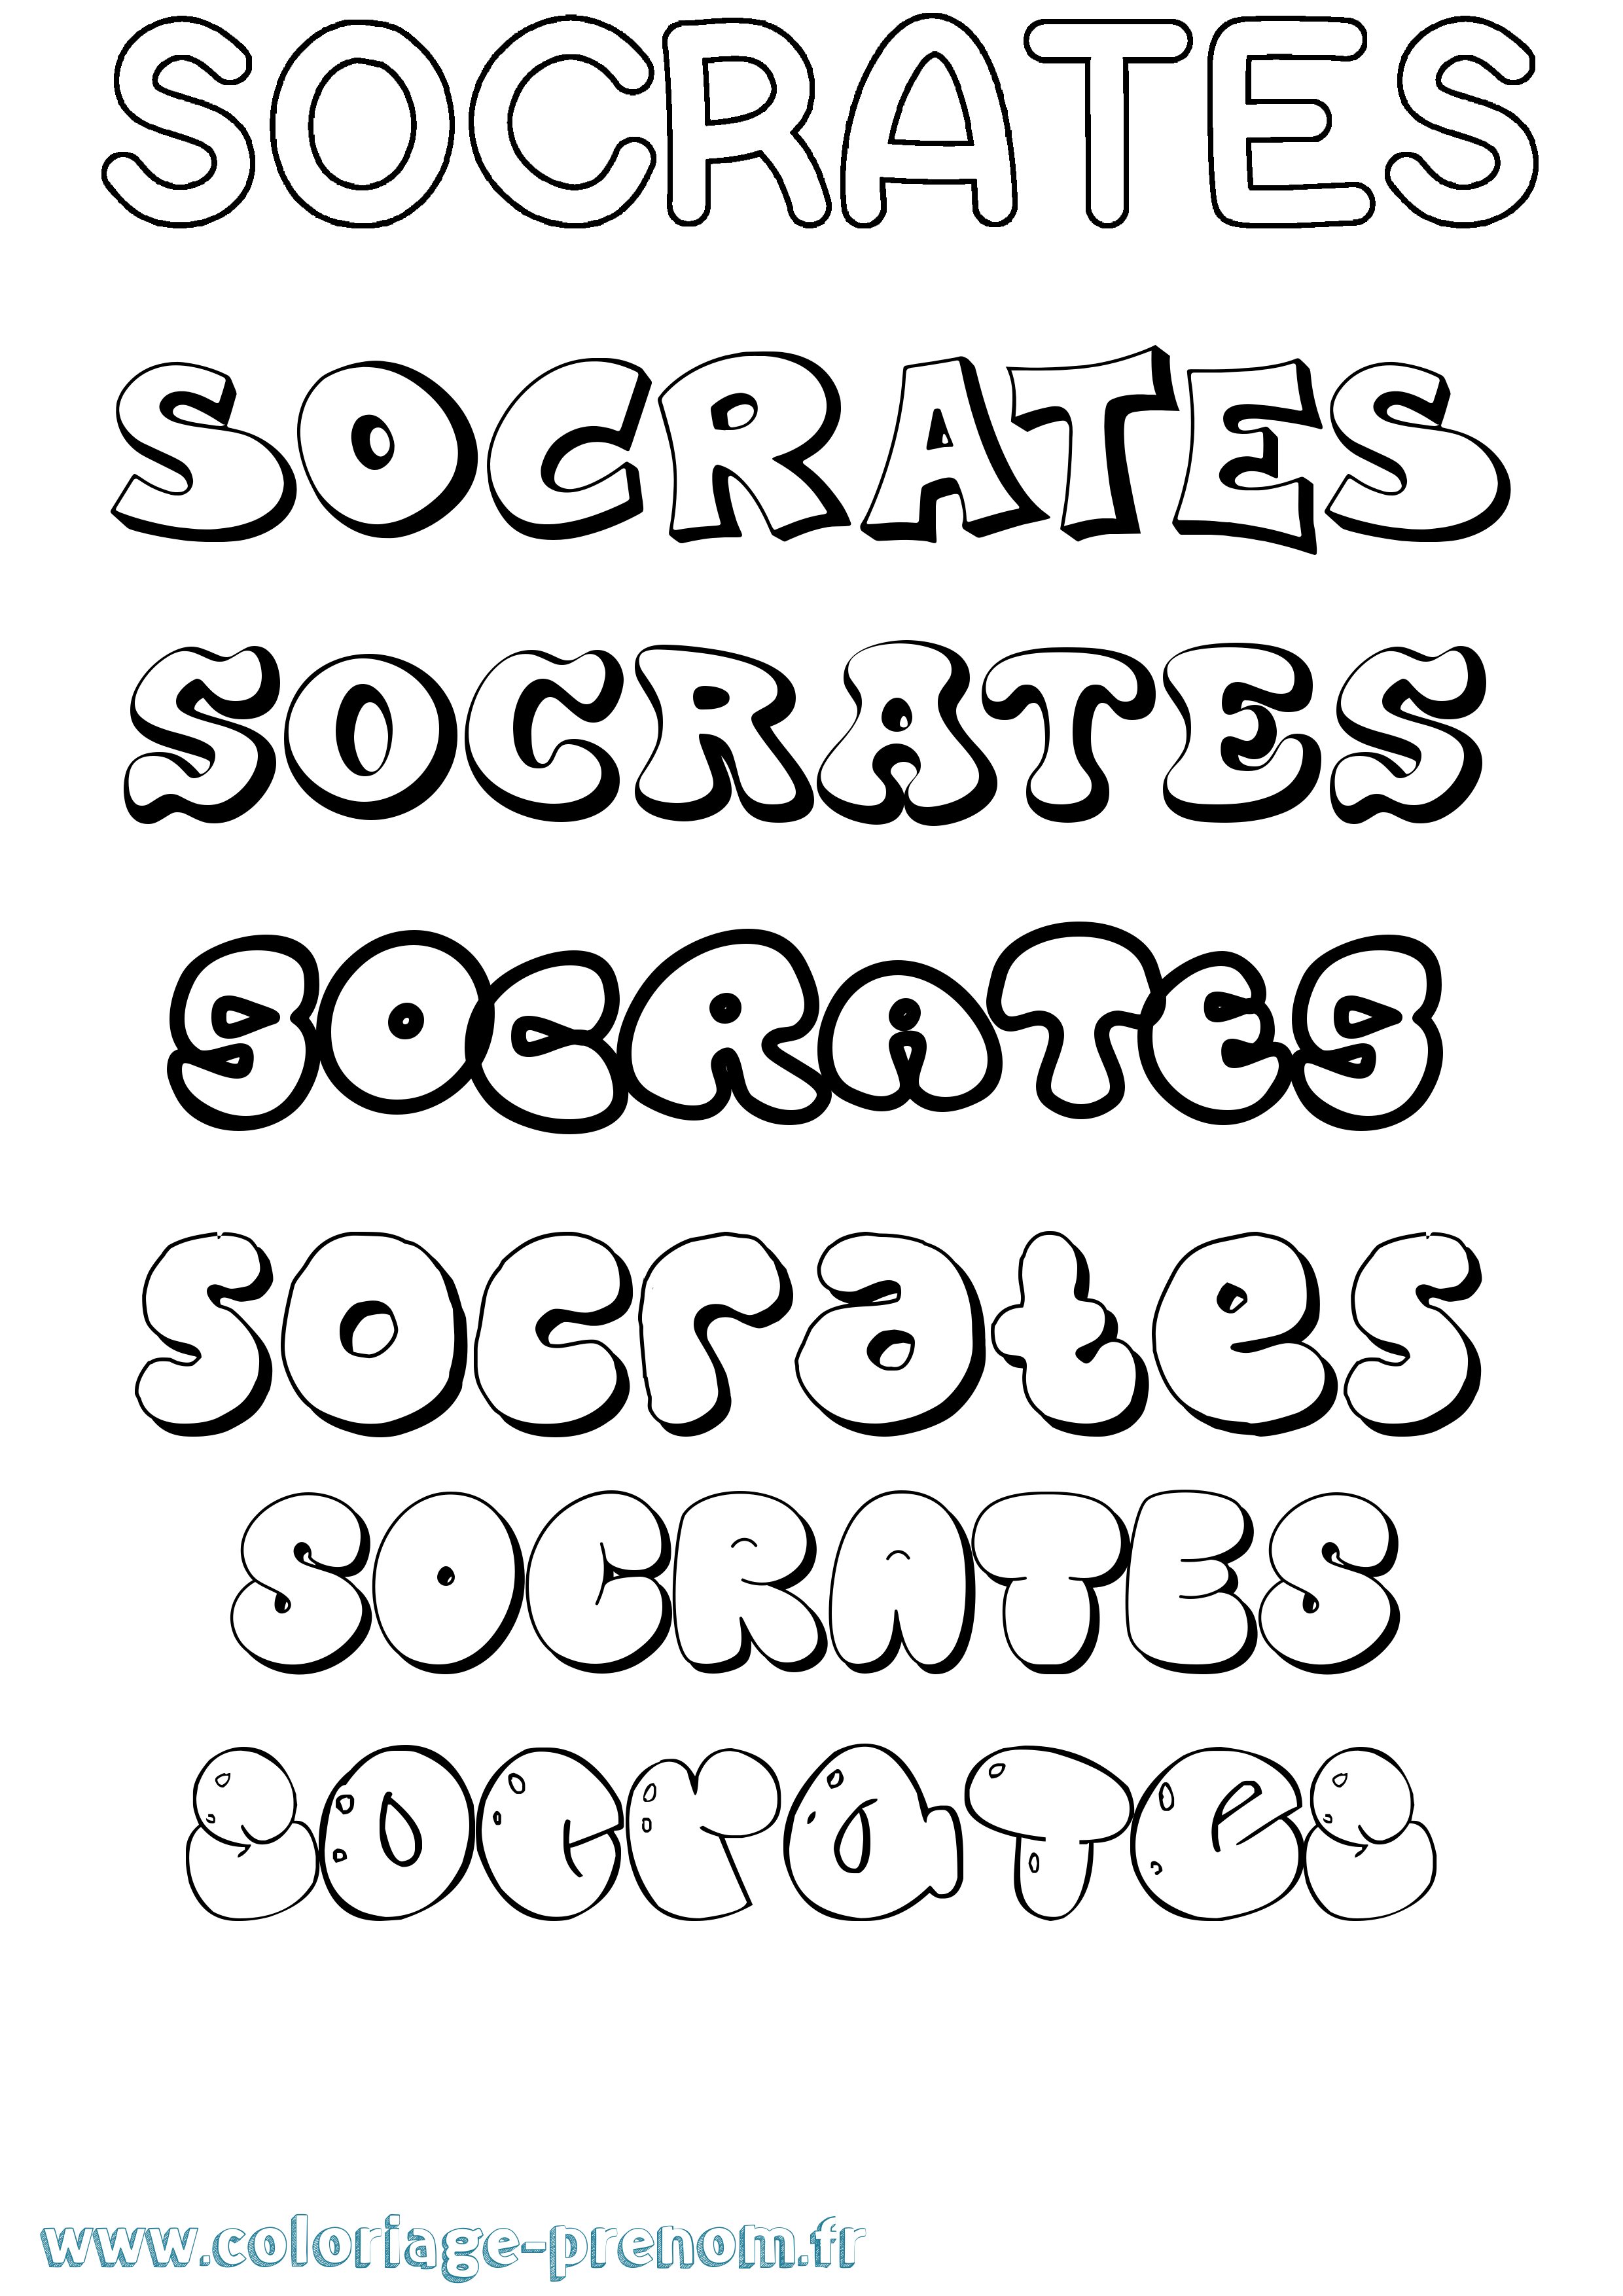 Coloriage prénom Socrates Bubble